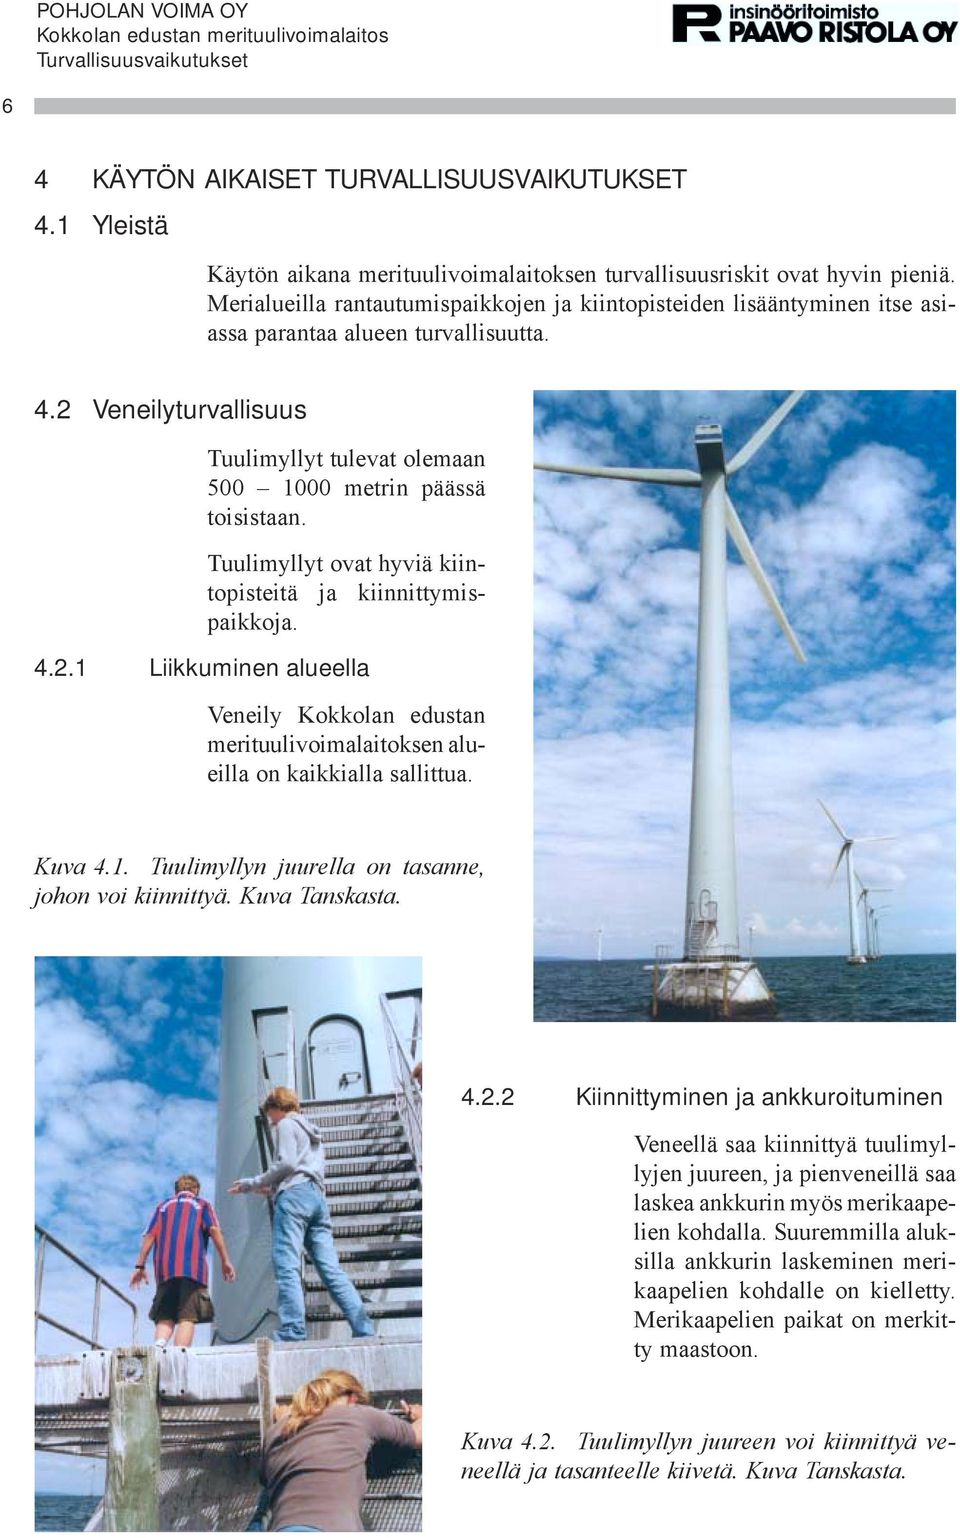 Tuulimyllyt ovat hyviä kiintopisteitä ja kiinnittymispaikkoja. 4.2.1 Liikkuminen alueella Veneily Kokkolan edustan merituulivoimalaitoksen alueilla on kaikkialla sallittua. Kuva 4.1. Tuulimyllyn juurella on tasanne, johon voi kiinnittyä.